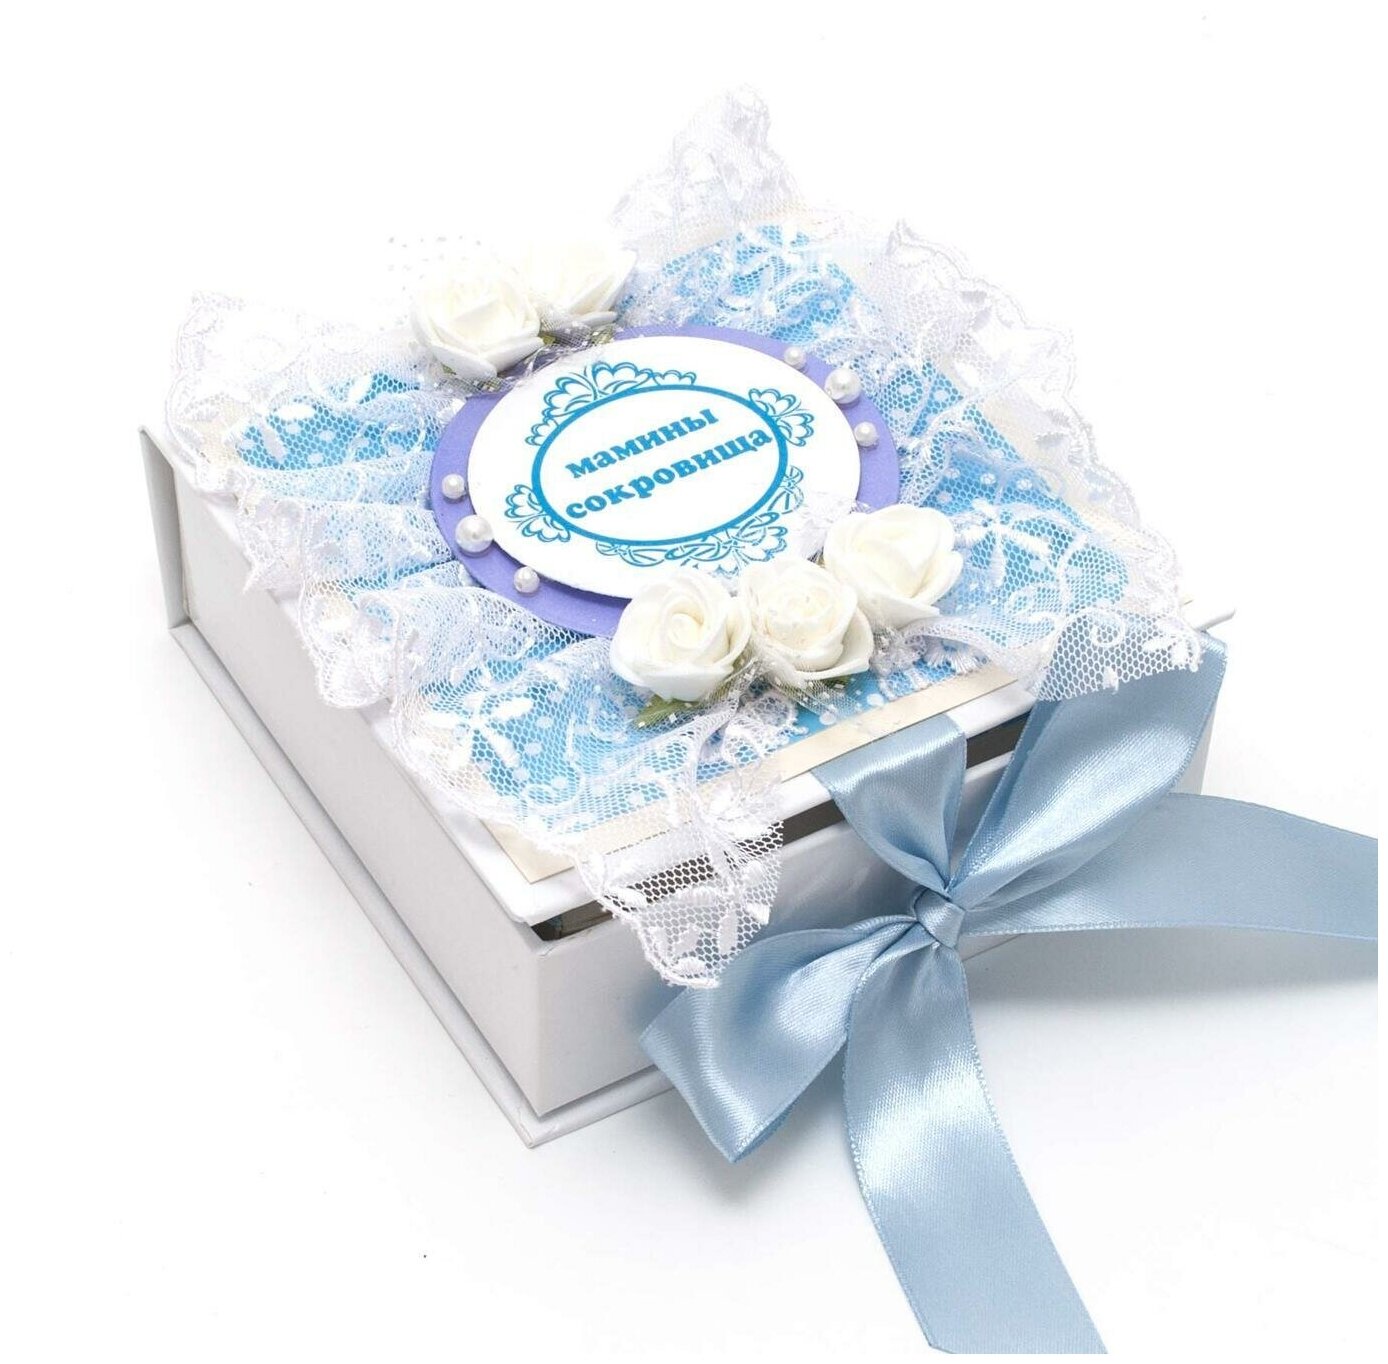 Ажурная коробочка memory box для маминых сокровищ - памятных вещей новорожденного сына, в голубых тонах с белым кружевом, латексными розами и атласной лентой